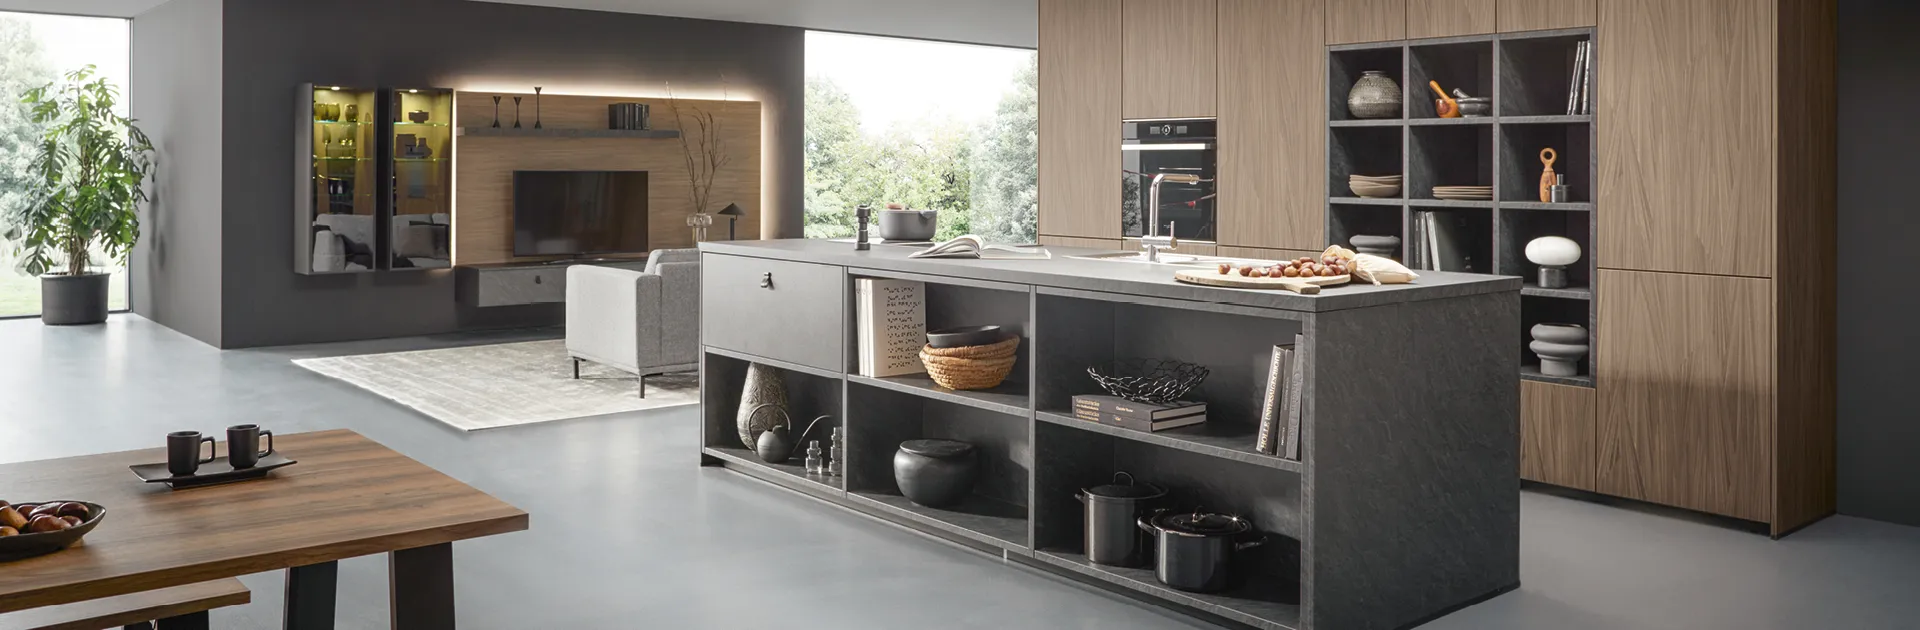 Contur Küche grau mit Holz